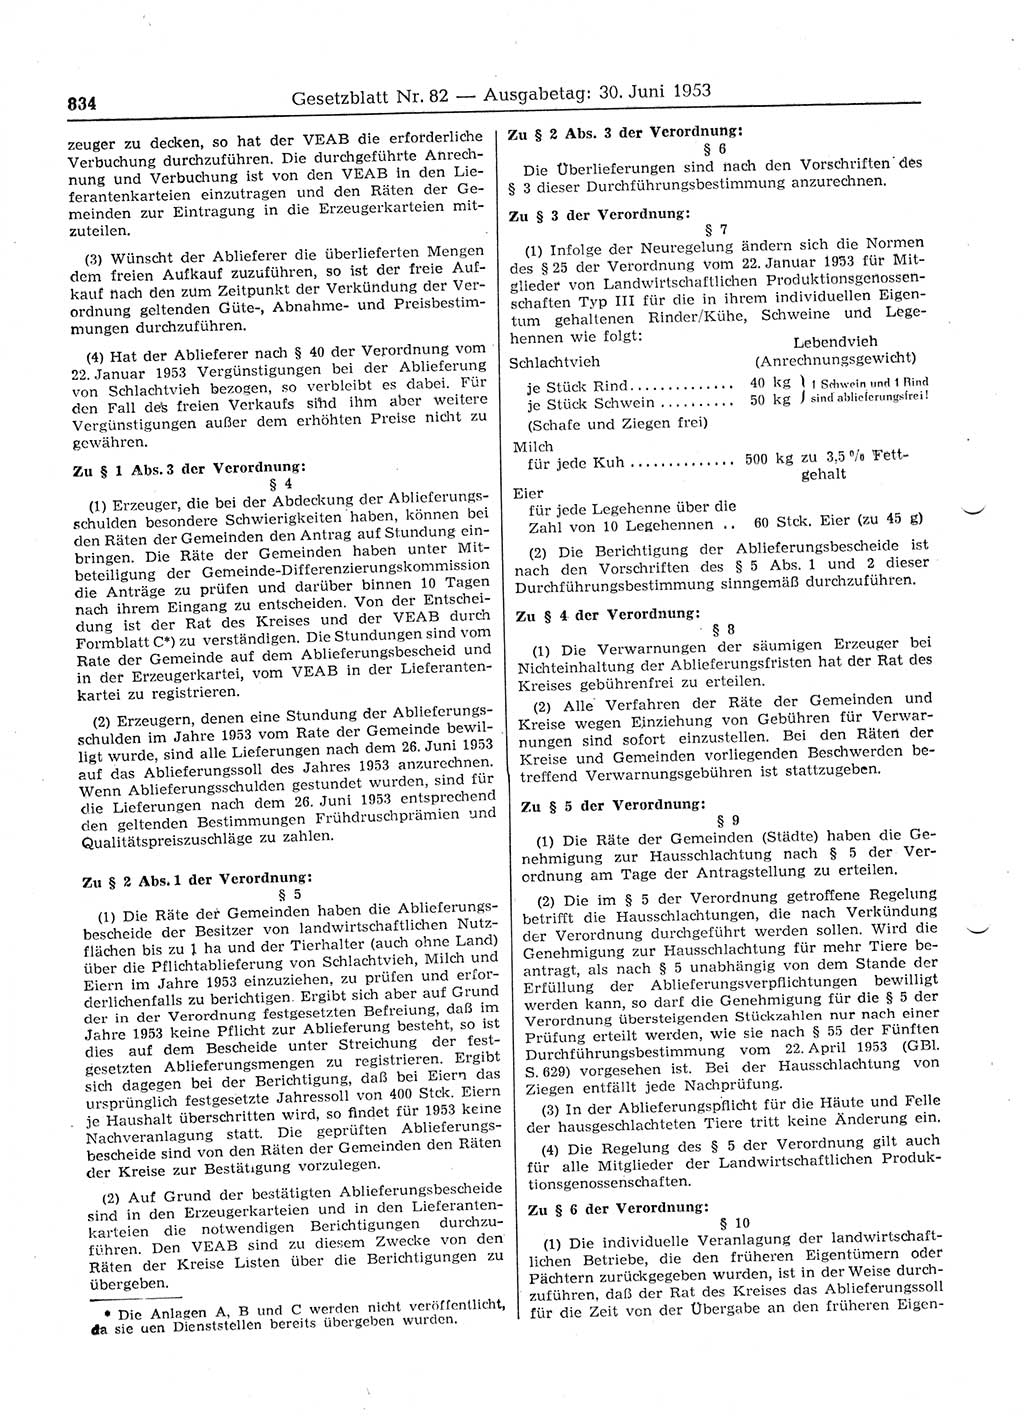 Gesetzblatt (GBl.) der Deutschen Demokratischen Republik (DDR) 1953, Seite 834 (GBl. DDR 1953, S. 834)